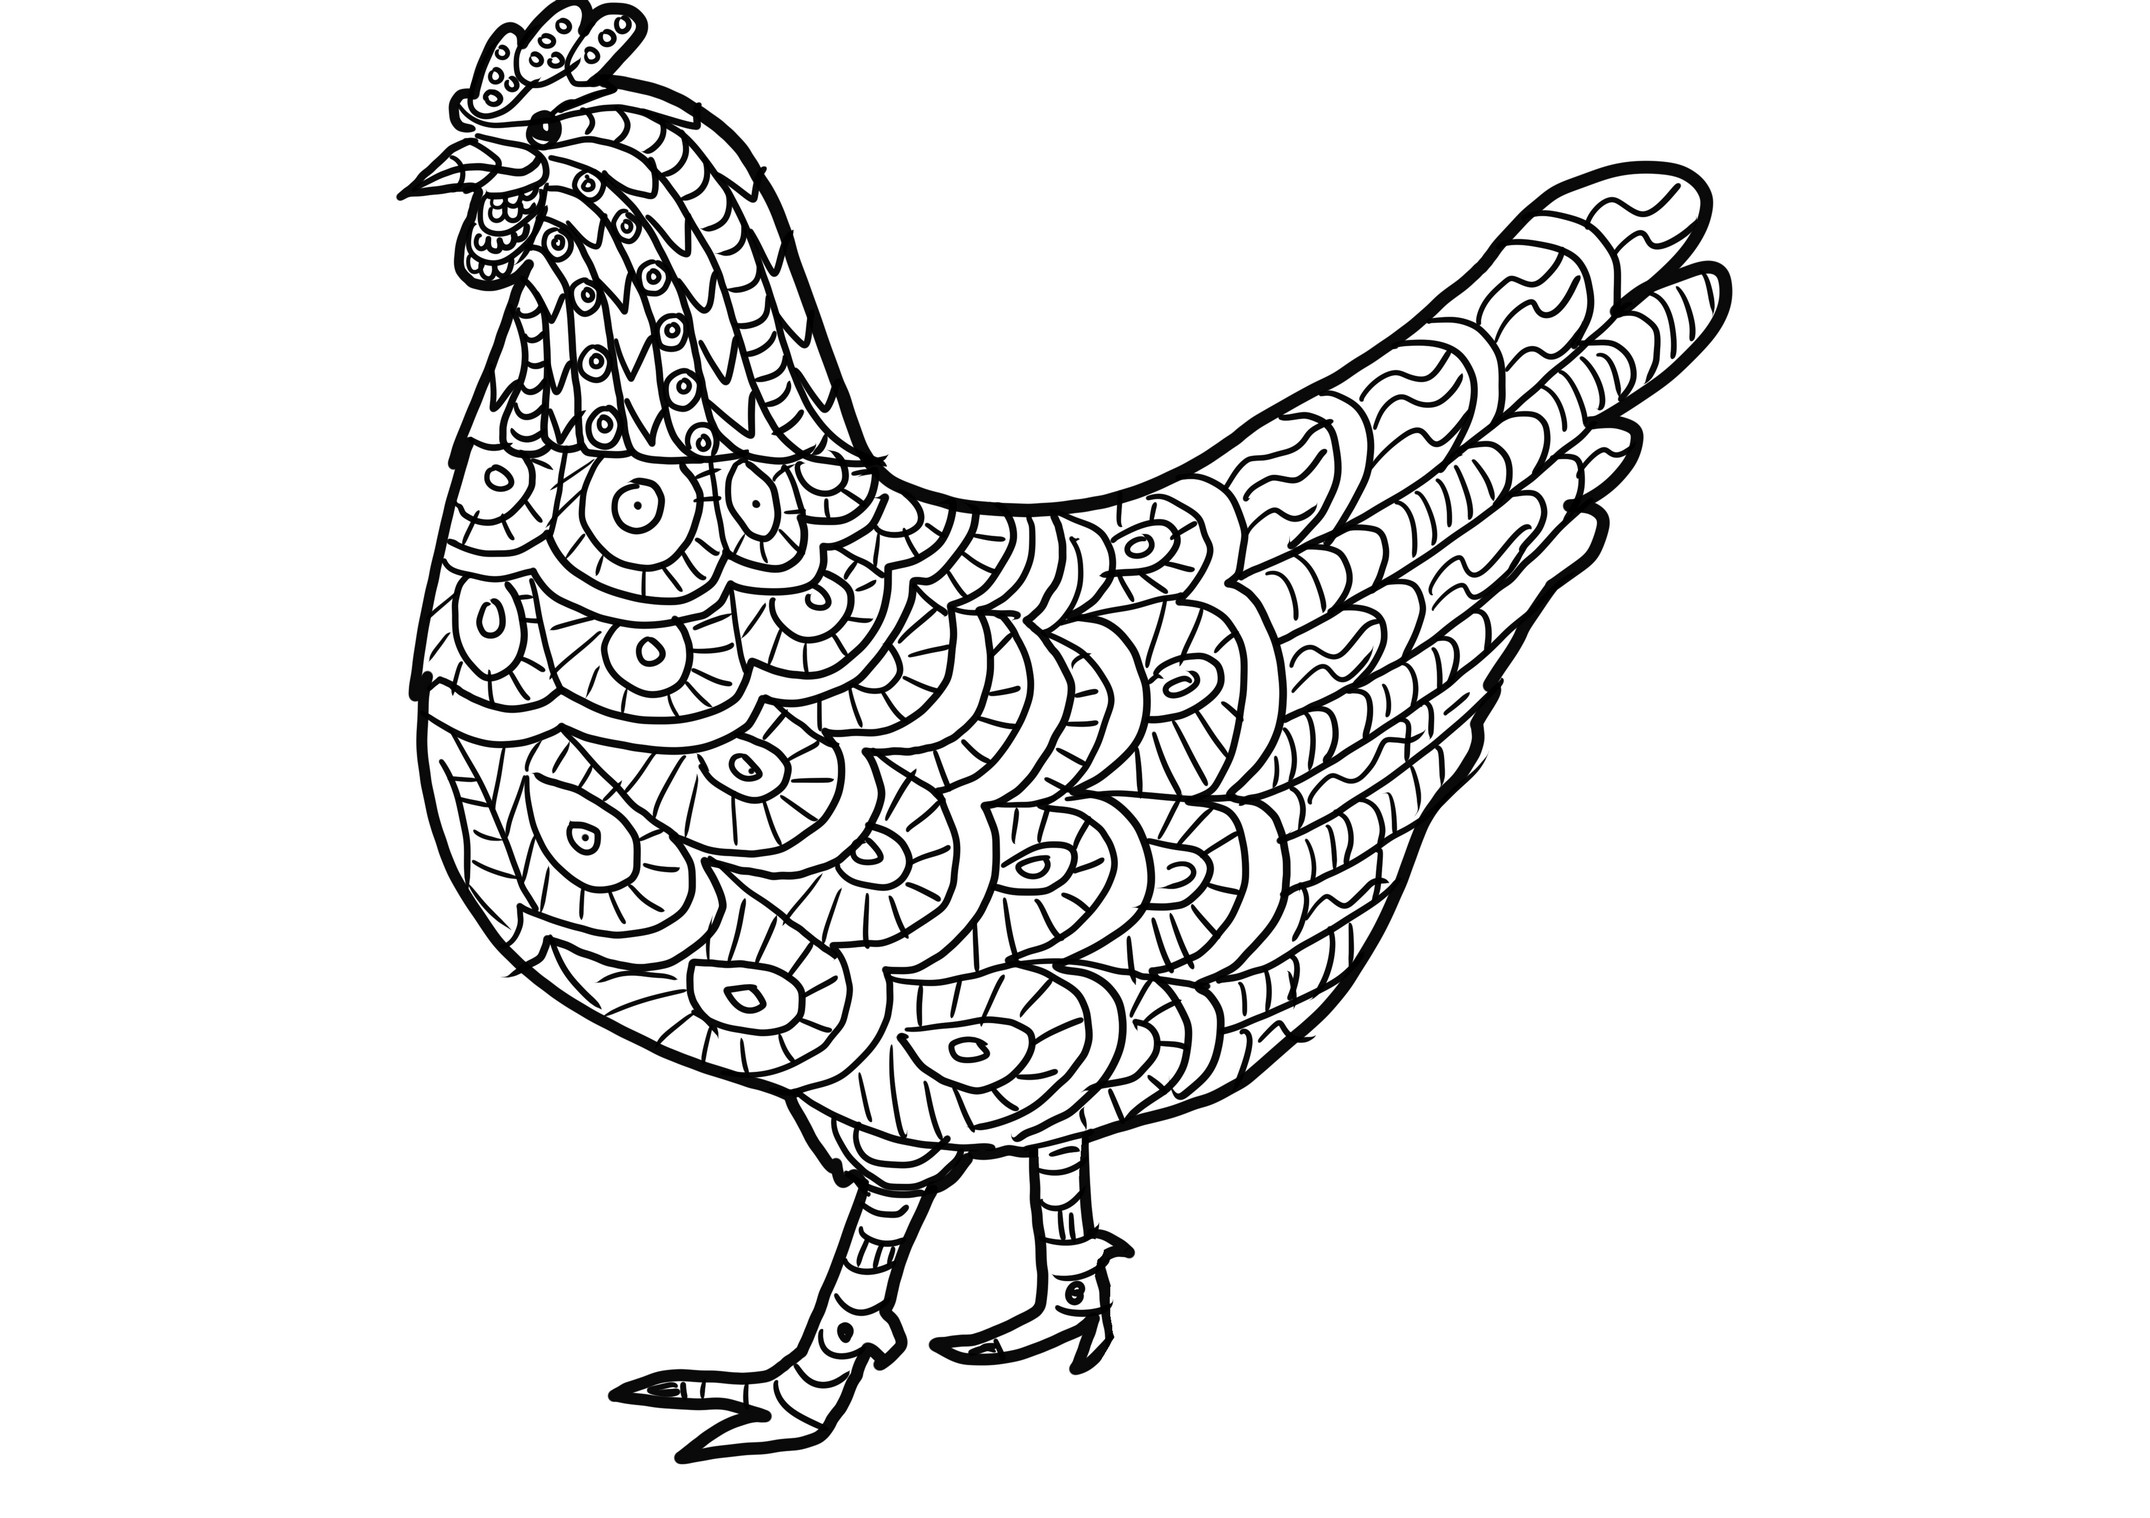 Dibujo de gallina realista para colorear